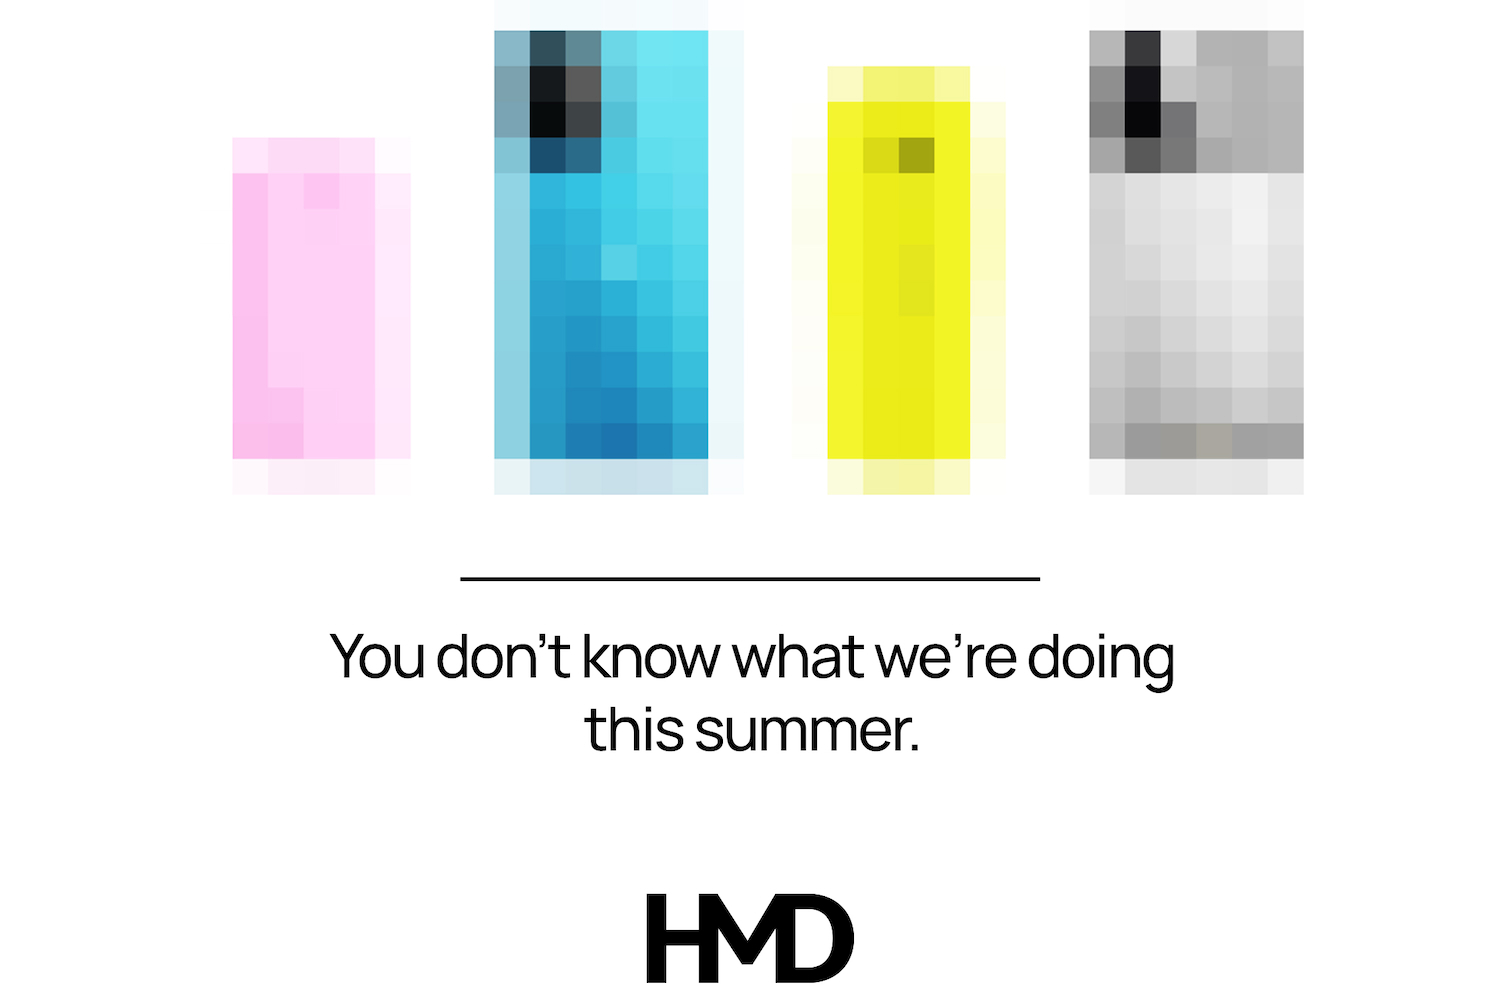 Una imagen teaser que muestra los lanzamientos pixelados de HMD este año.